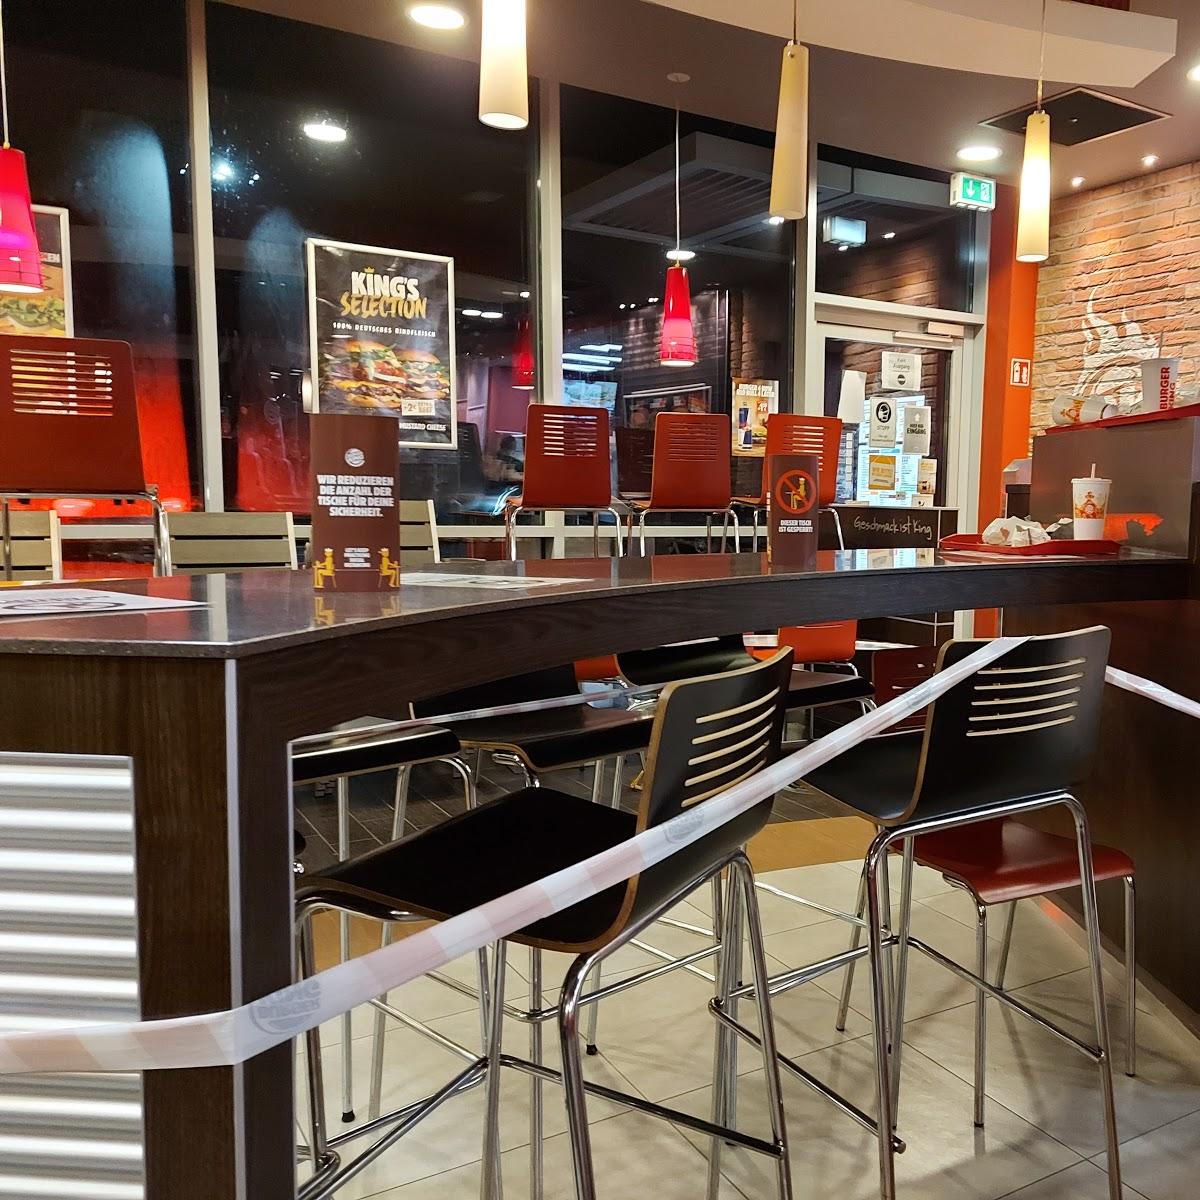 Restaurant "Burger King" in Castrop-Rauxel